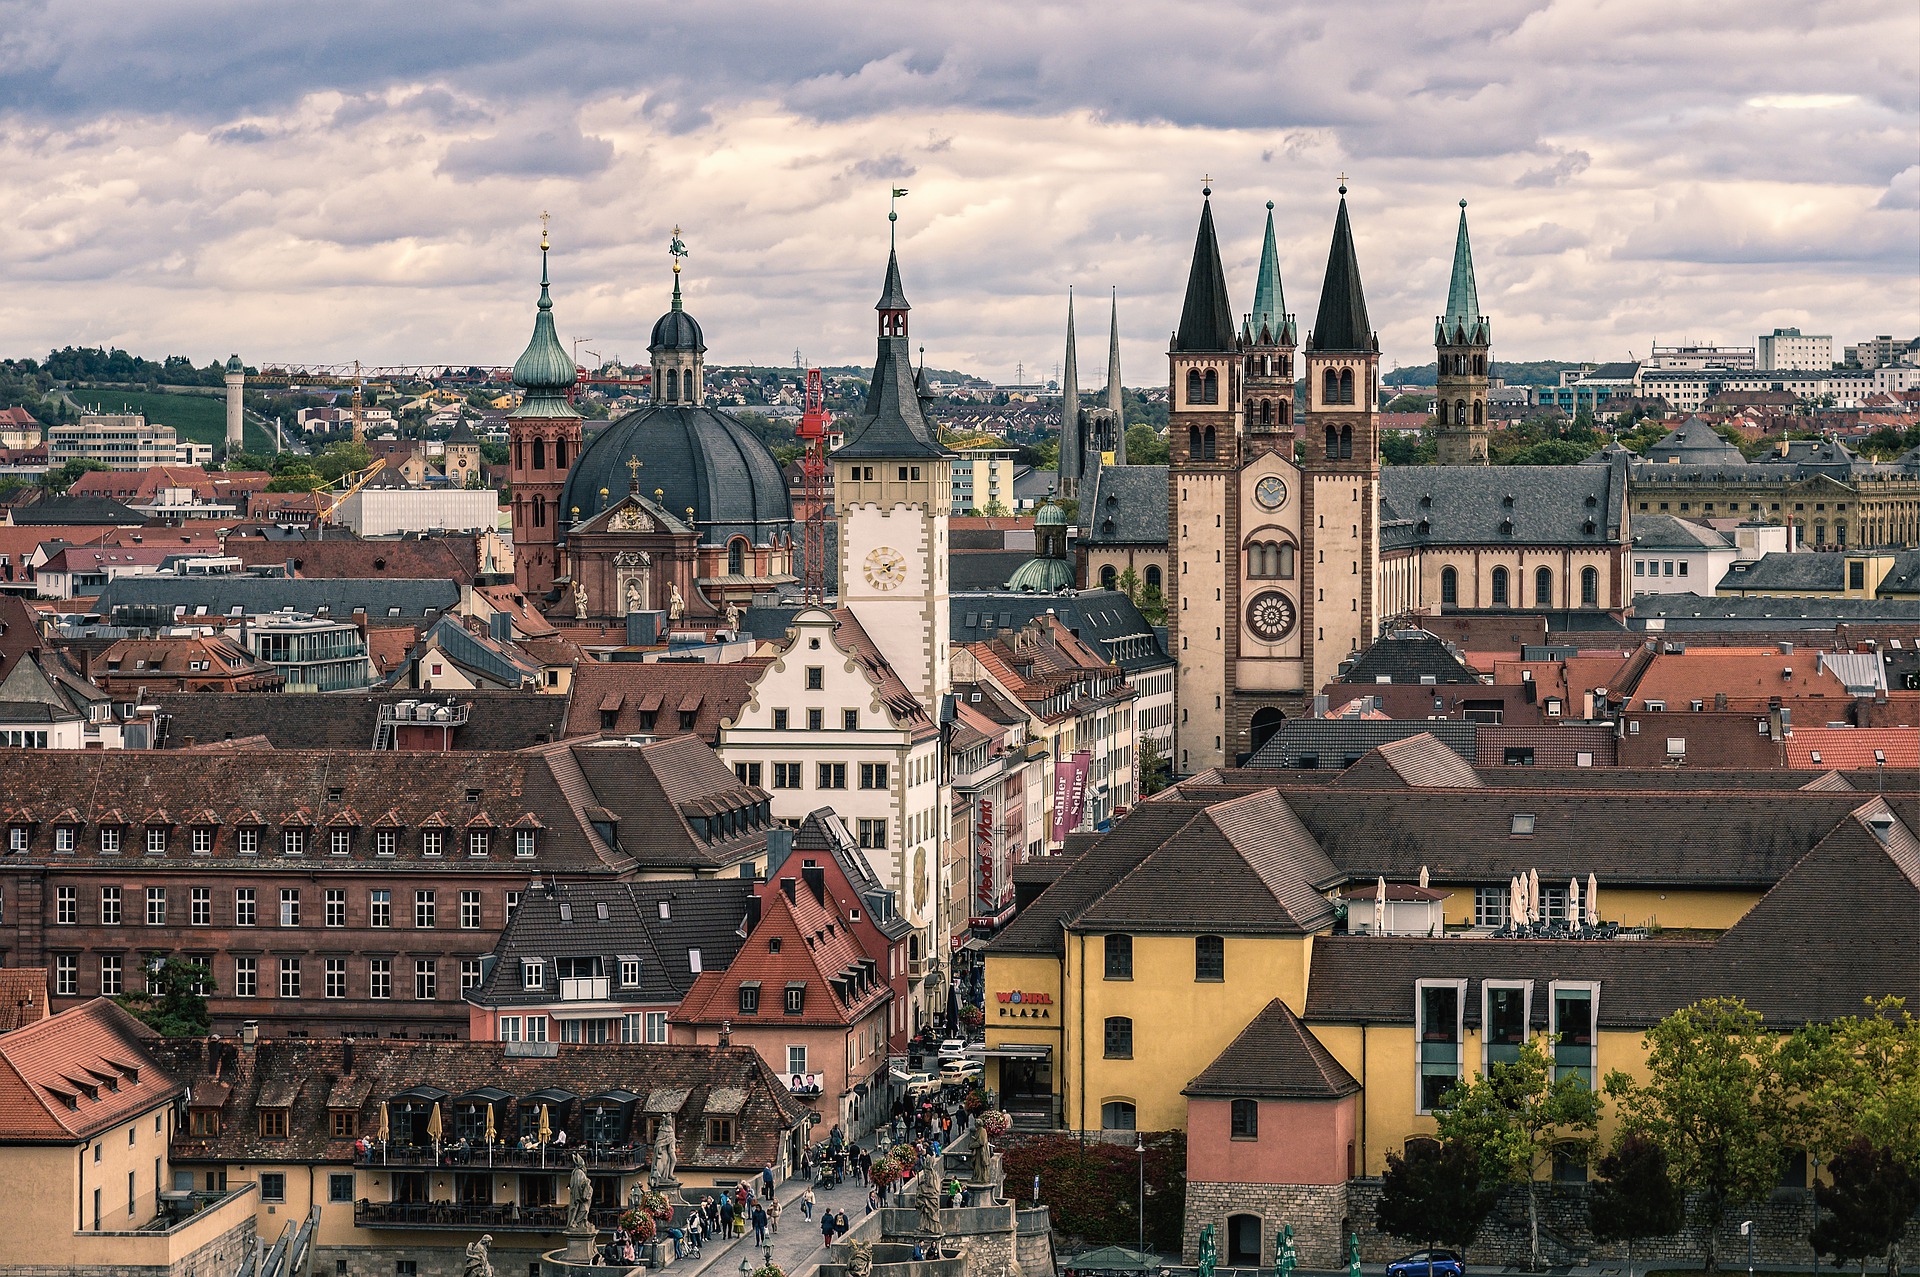 Die innenstadt von Würzburg fotografiert von LET IT CLICK